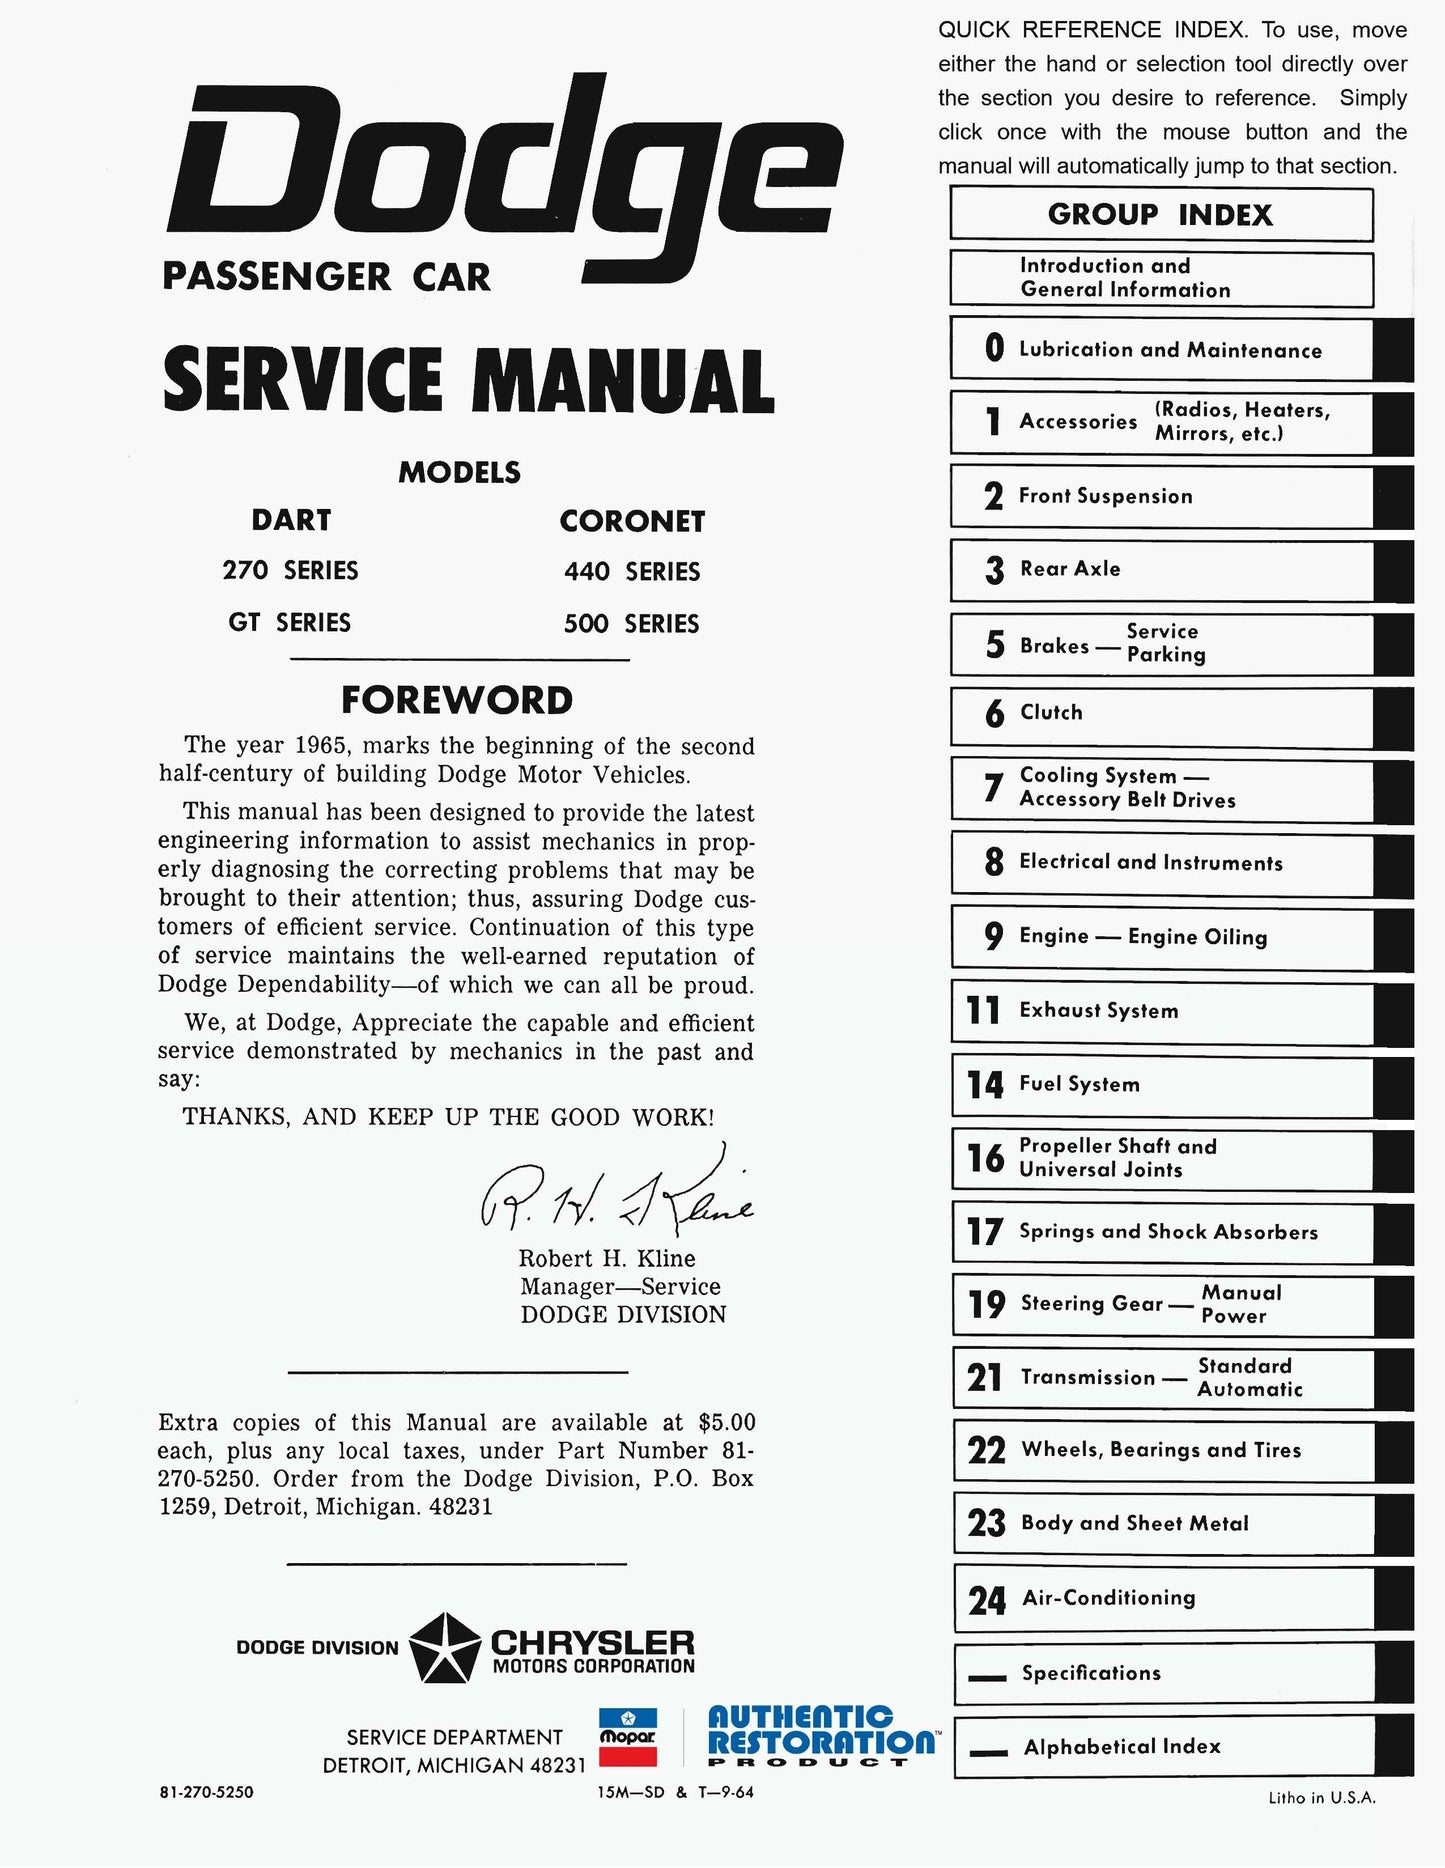 1965 Dodge Service Shop Manual - All Models